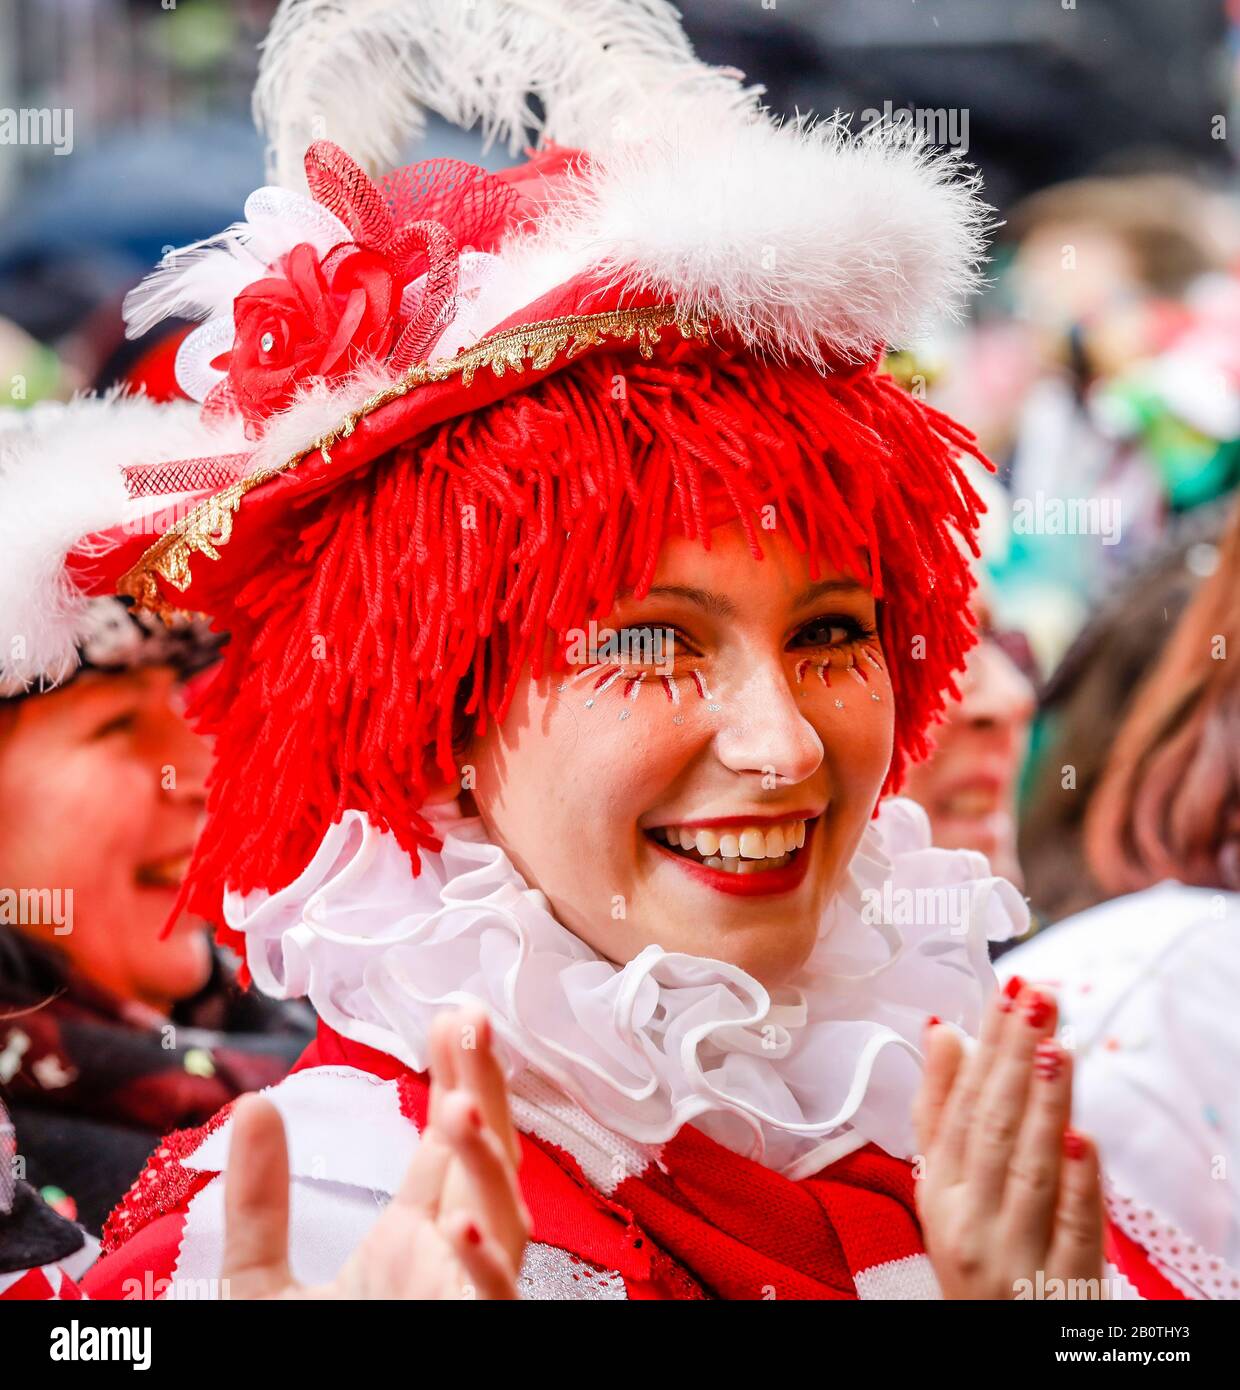 Colonia, Renania, Renania Settentrionale-Vestfalia, Germania - Carnevale a Colonia, sul Weiberfastnacht il carnevale di strada è tradizionalmente aperto presso l'Alter Foto Stock